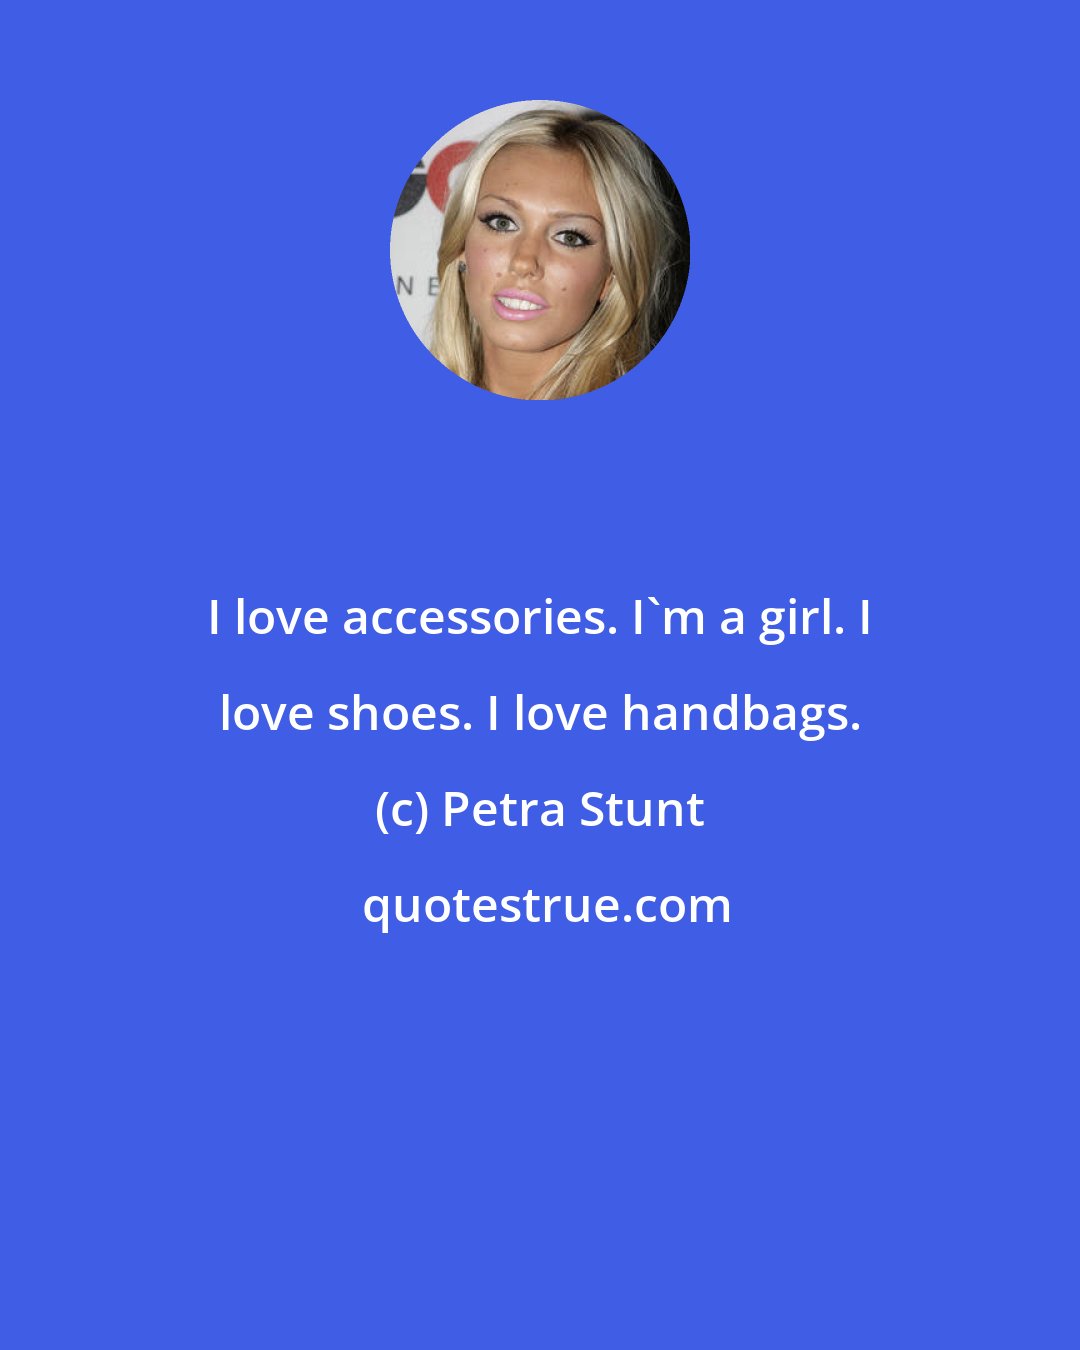 Petra Stunt: I love accessories. I'm a girl. I love shoes. I love handbags.